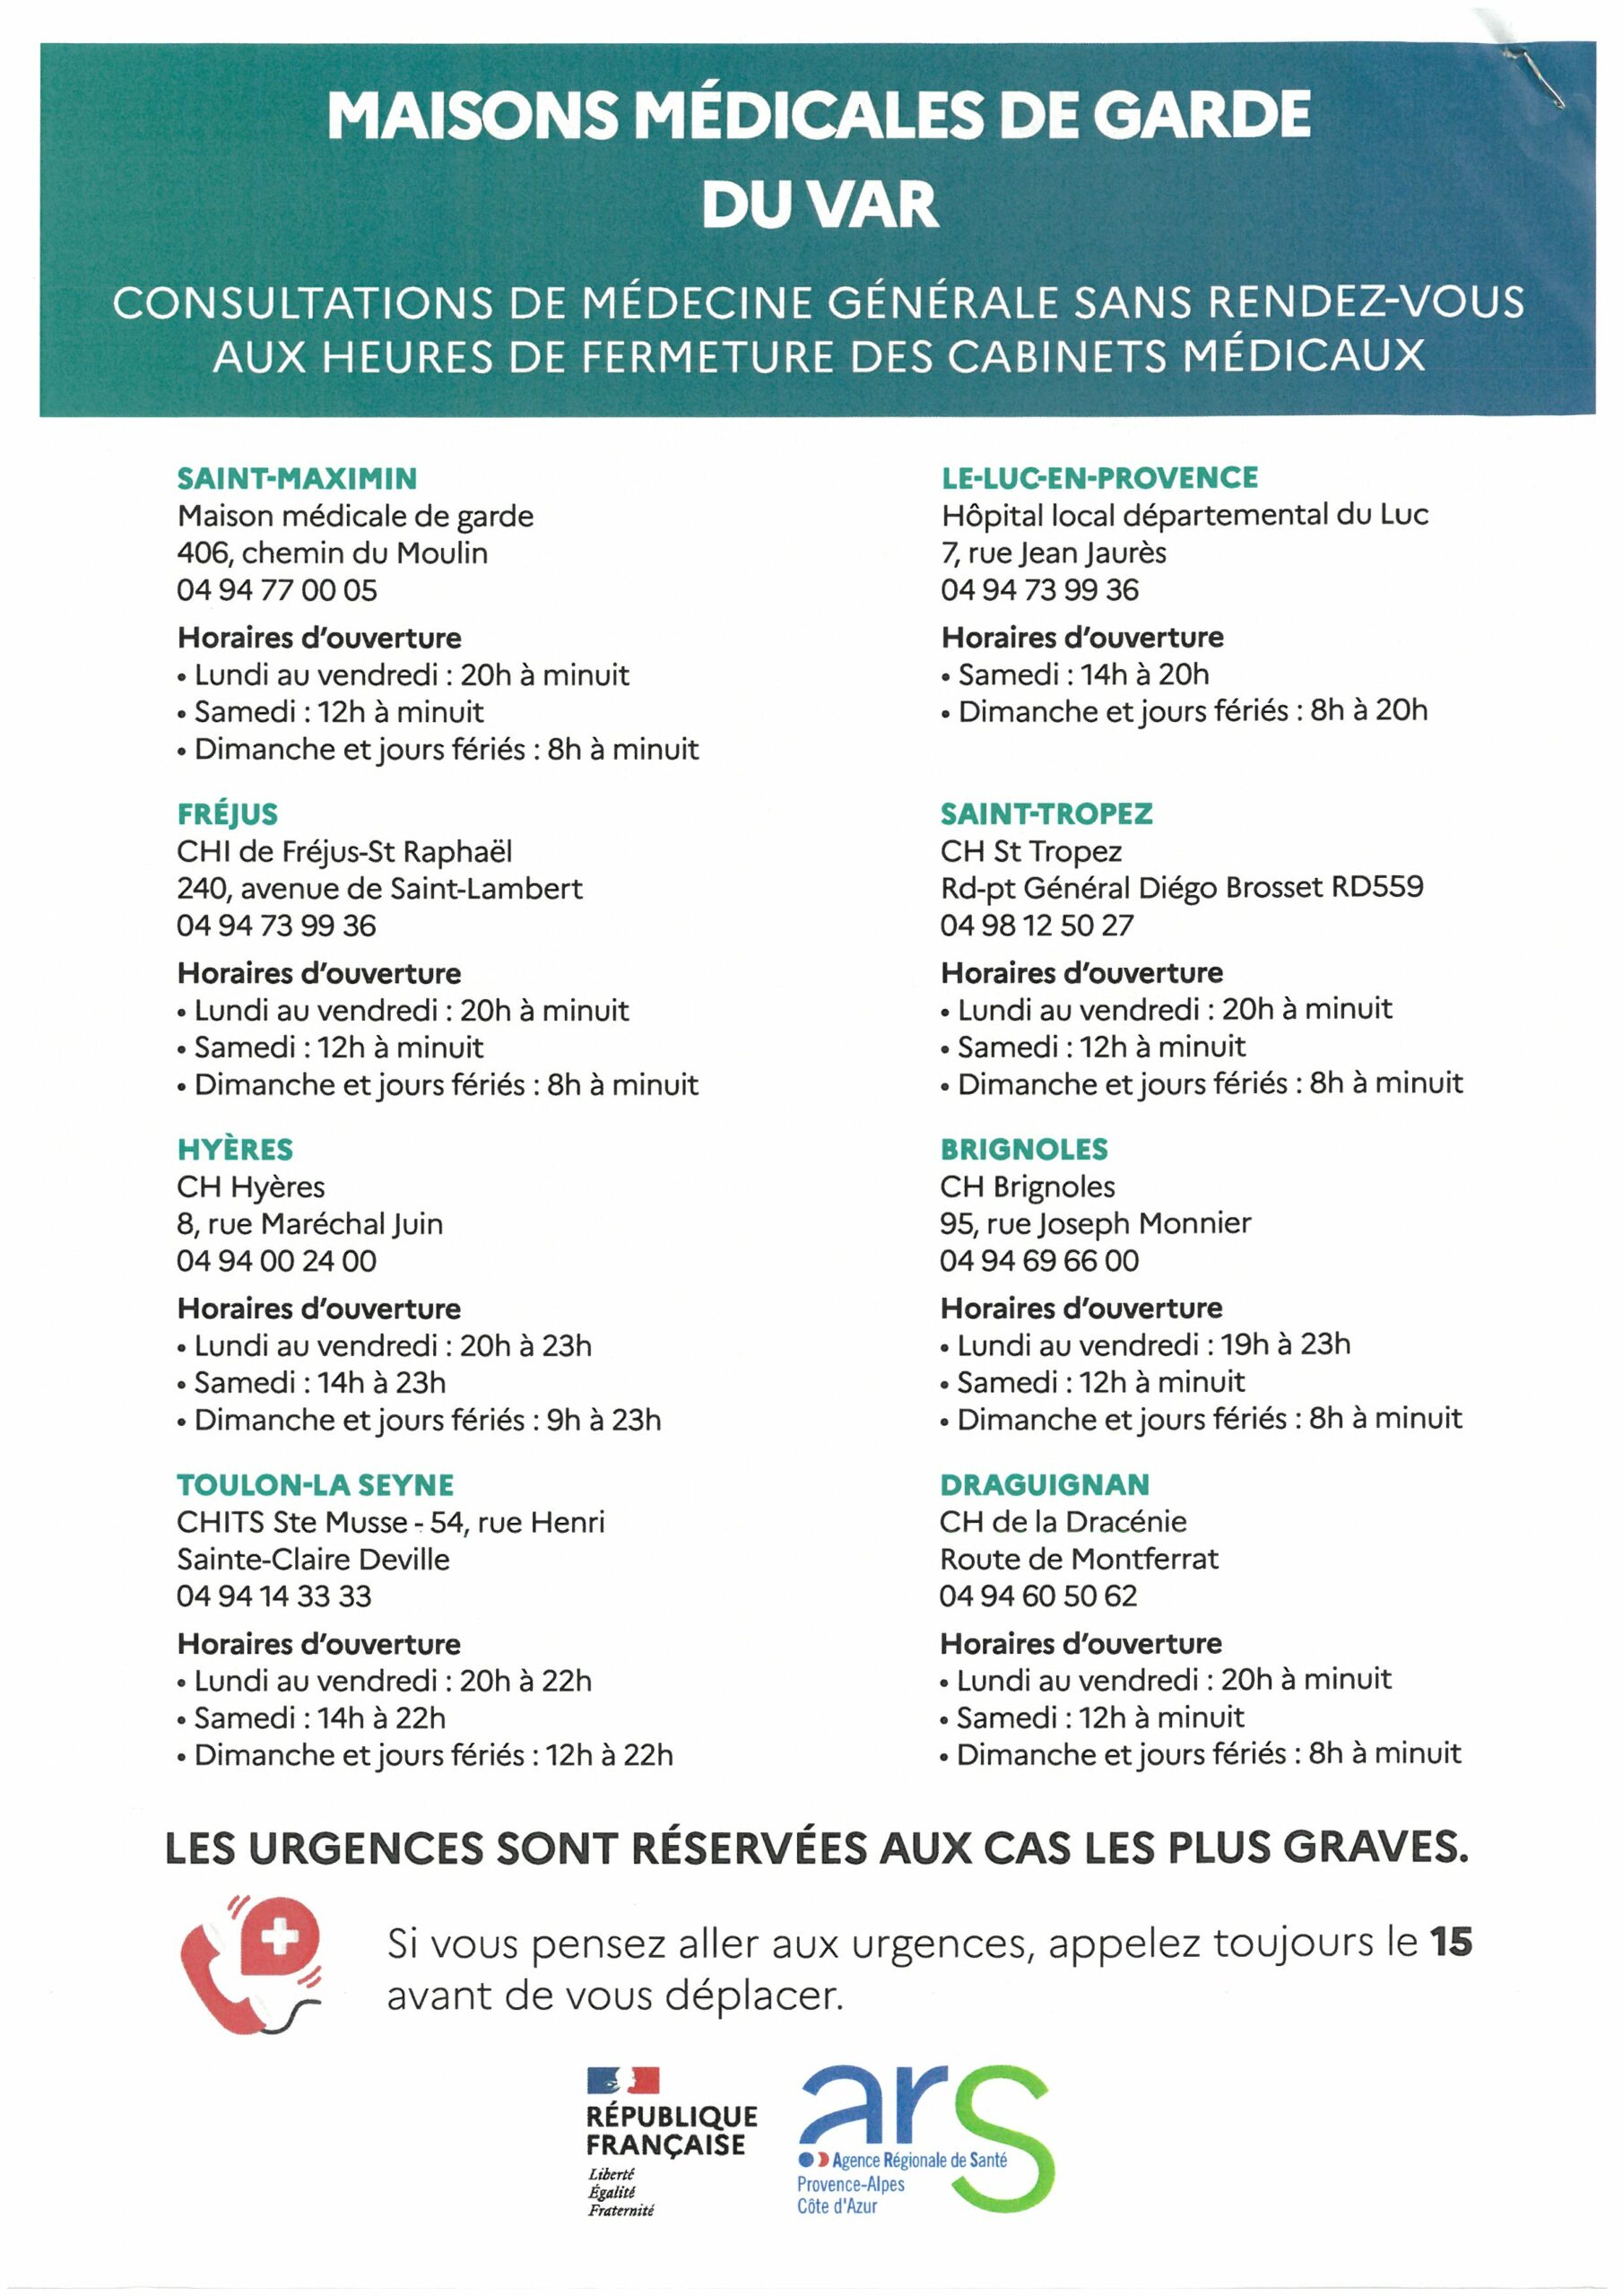 Liste des maisons médicales du Var. Pour Draguignan : 04 94 60 50 62 (hôpital, route de Montferrat)